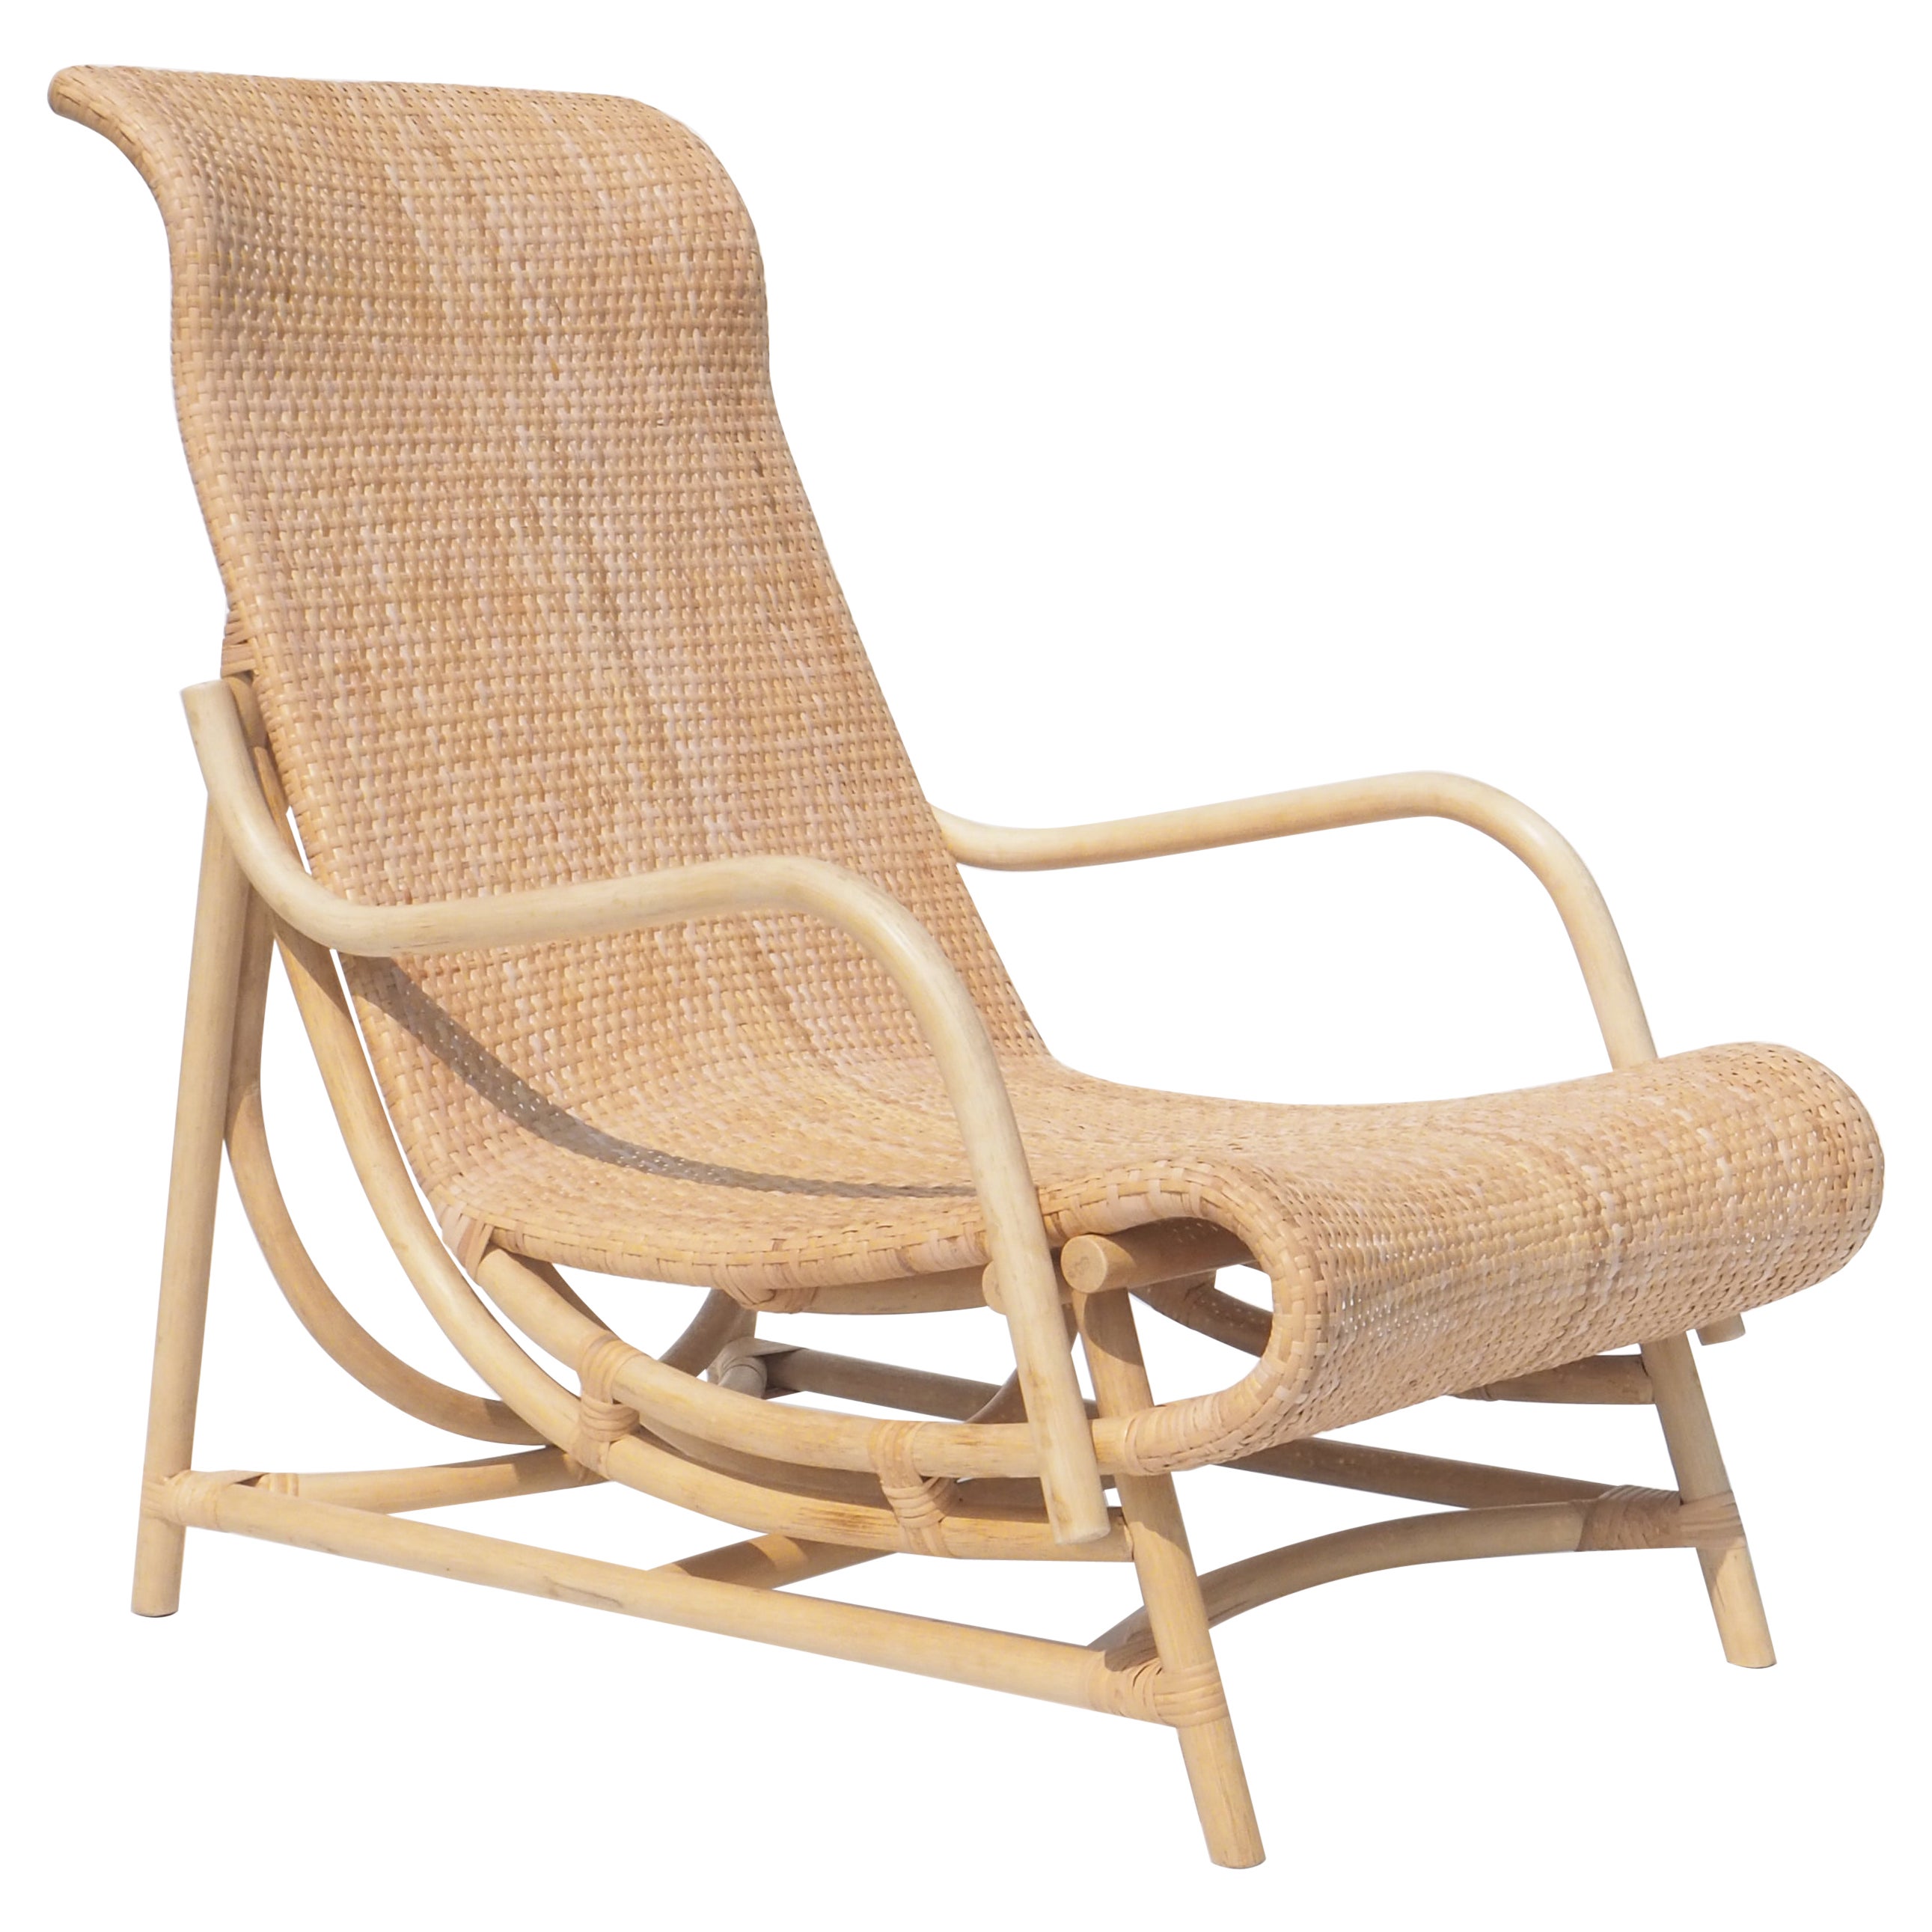 Nigma, Rattan Lounge Chair